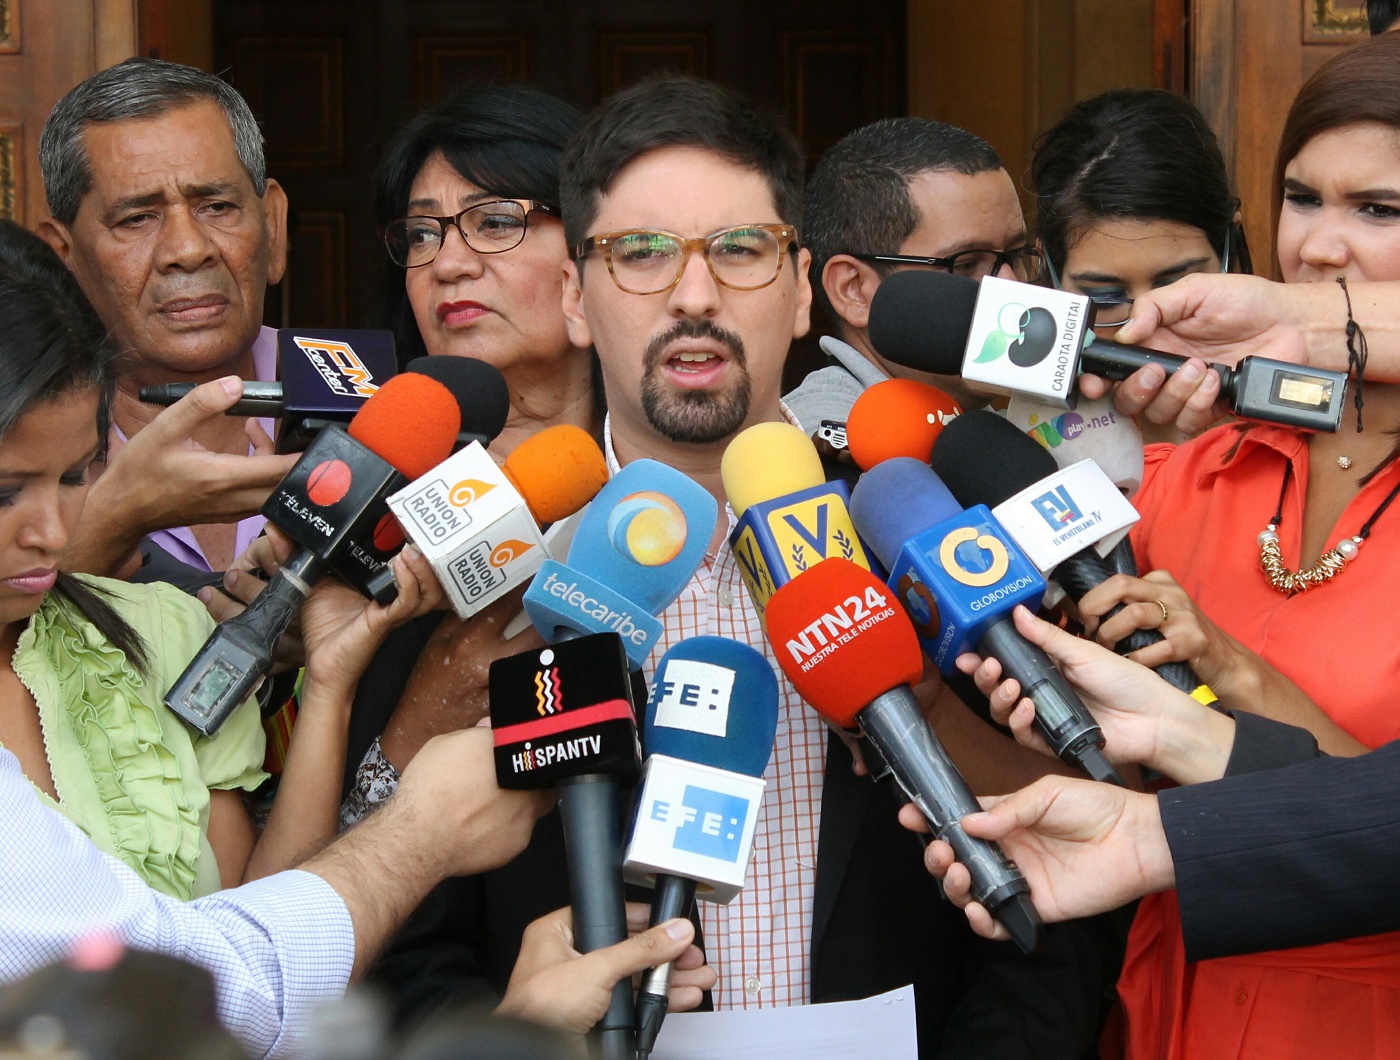 “TSJ es cómplice de la corrupción que azota todos los venezolanos”